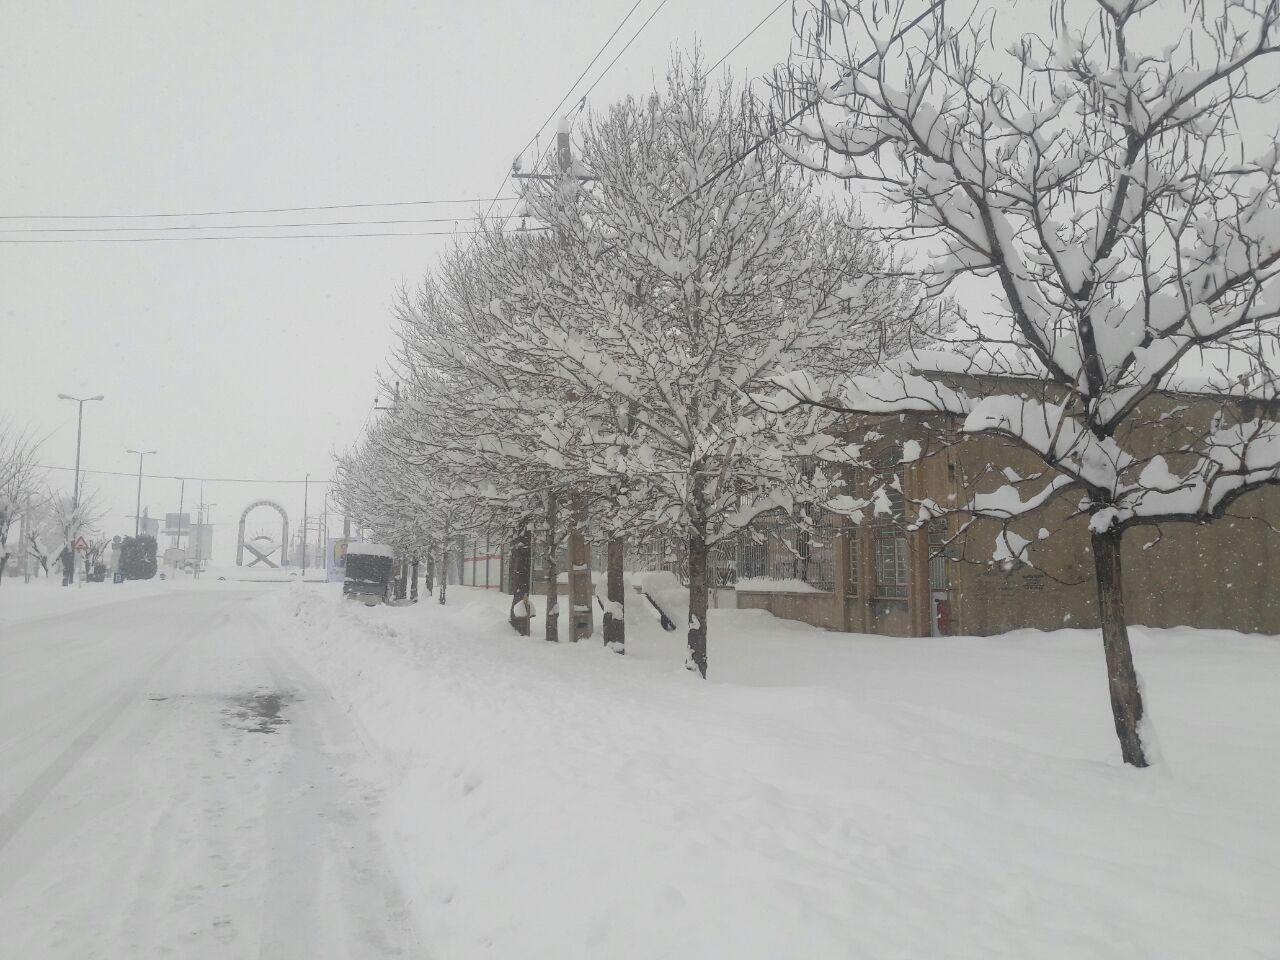 احتمال بارش برف در ۱۶ استان/ آذربایجان غربی، کردستان و کرمانشاه در محدوده بارش ها